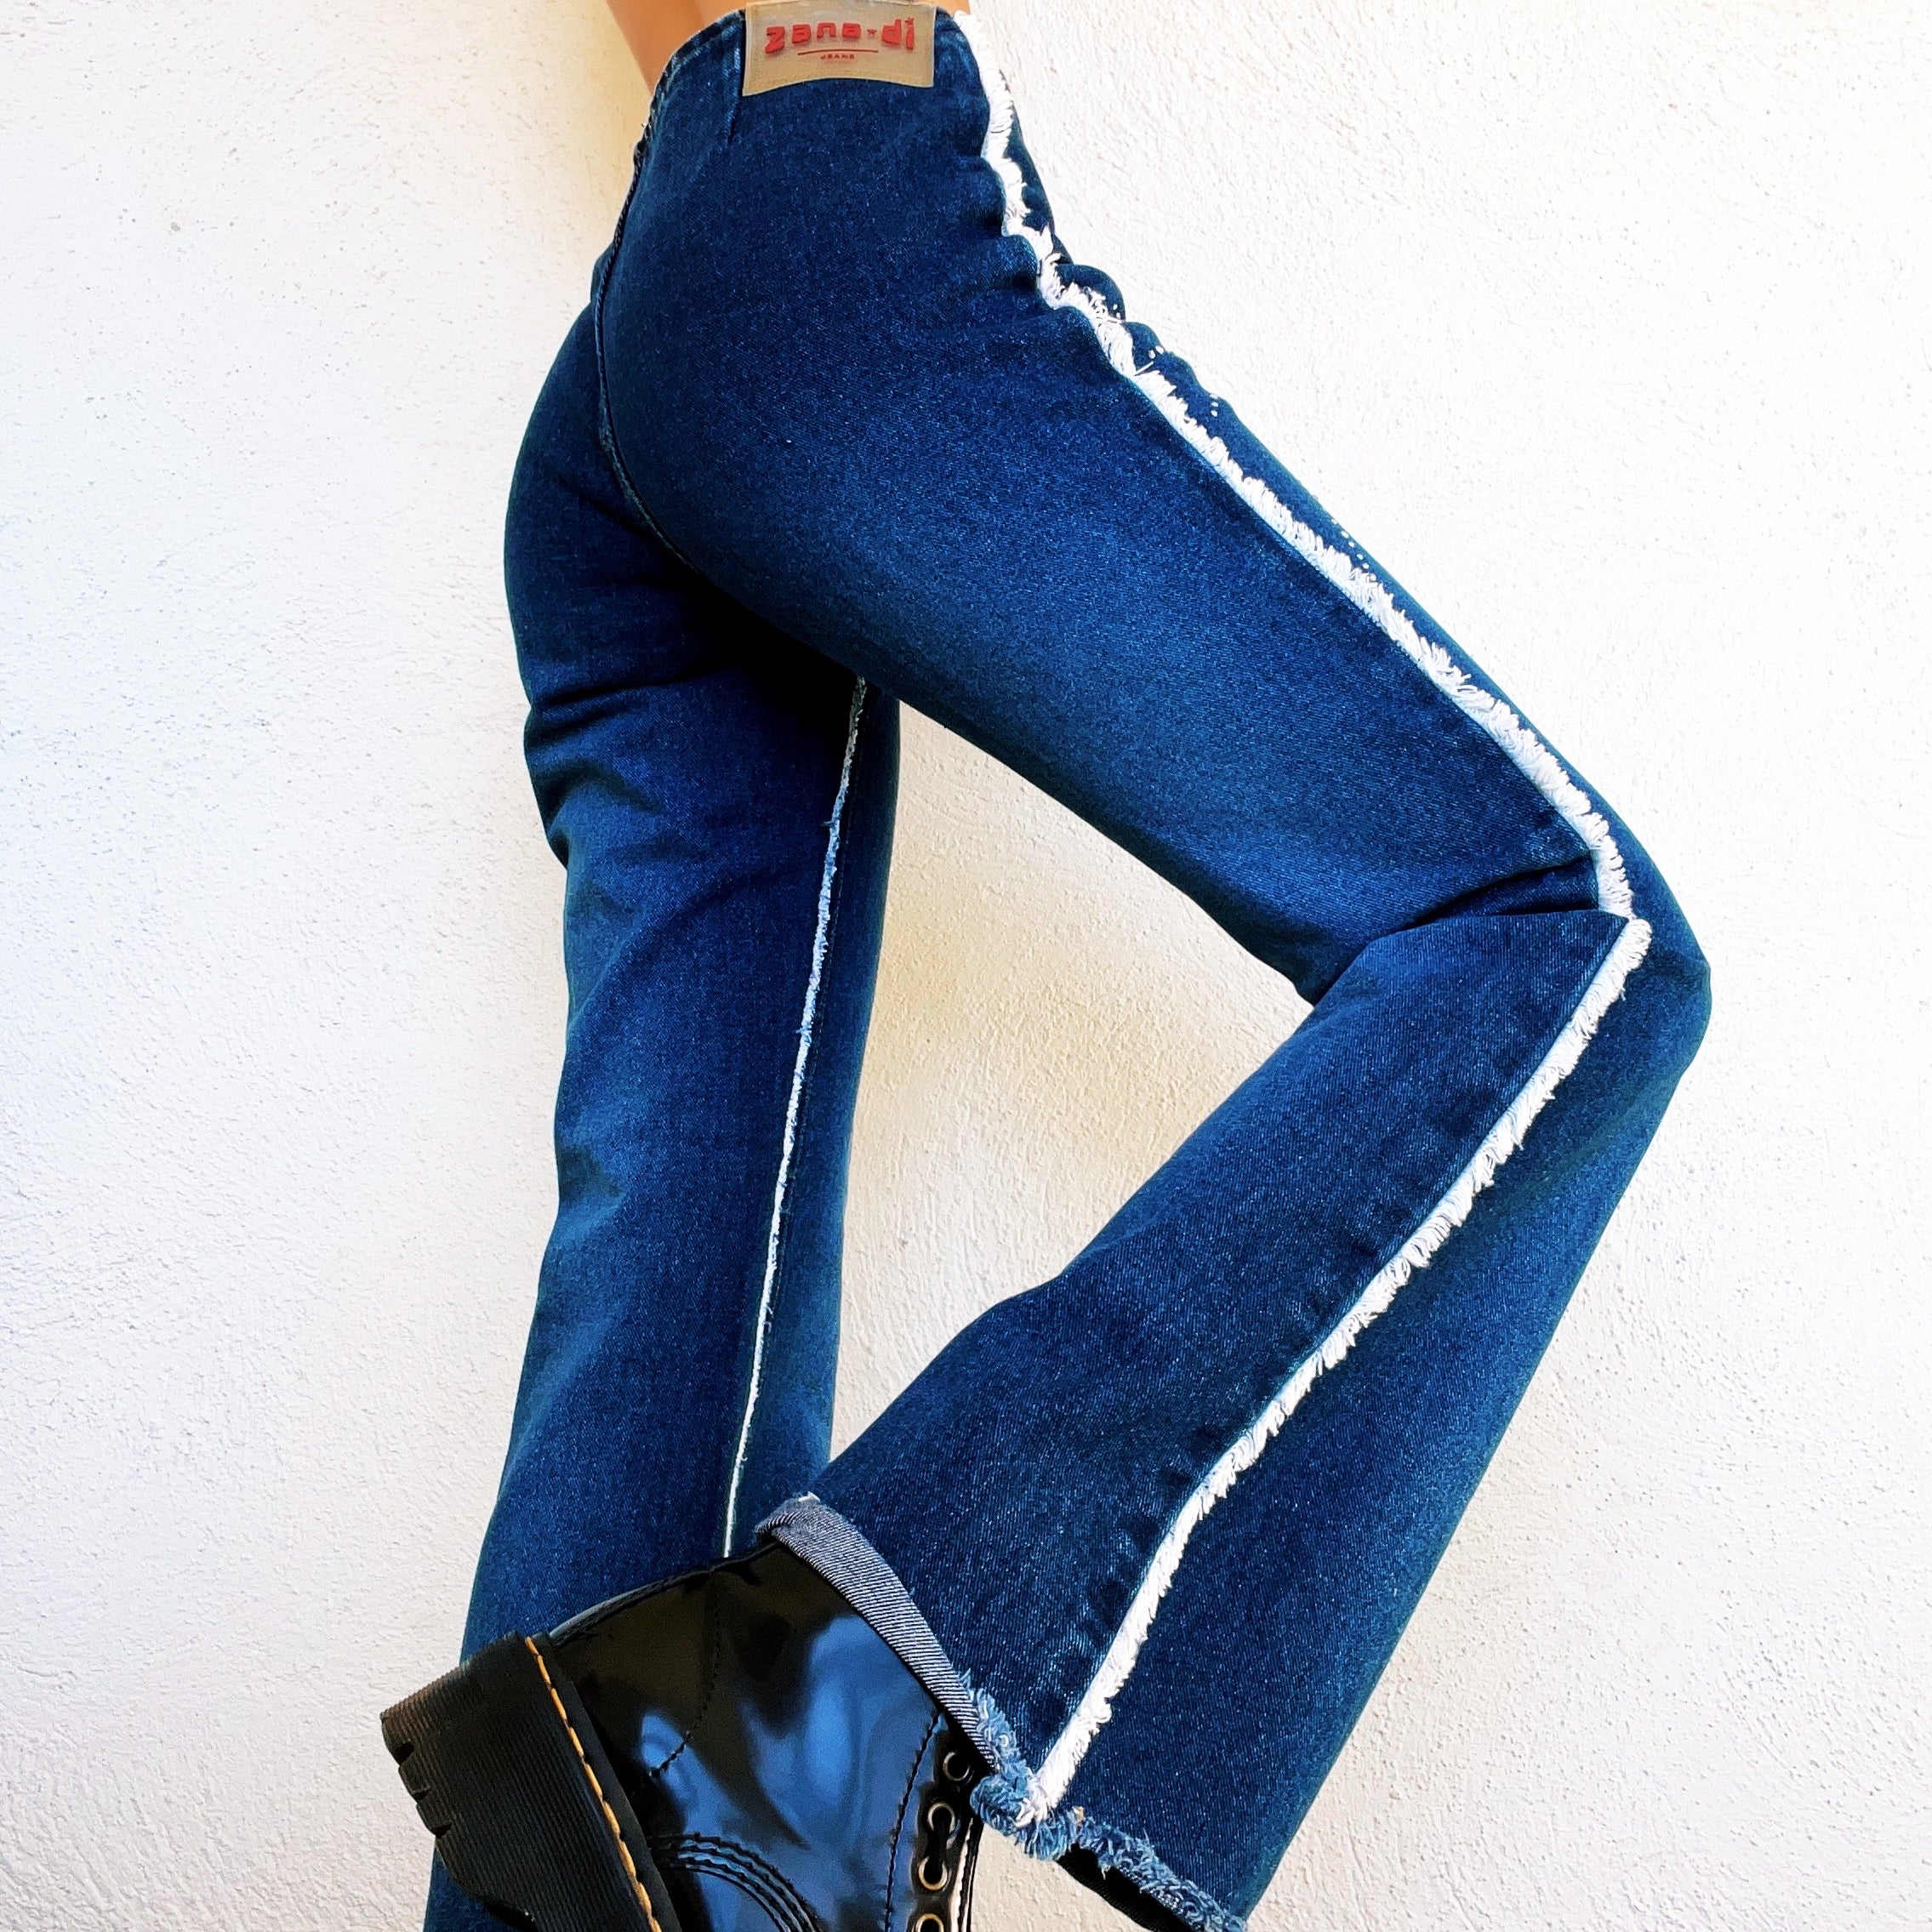 Zana Di Rhinestone Jeans (S)